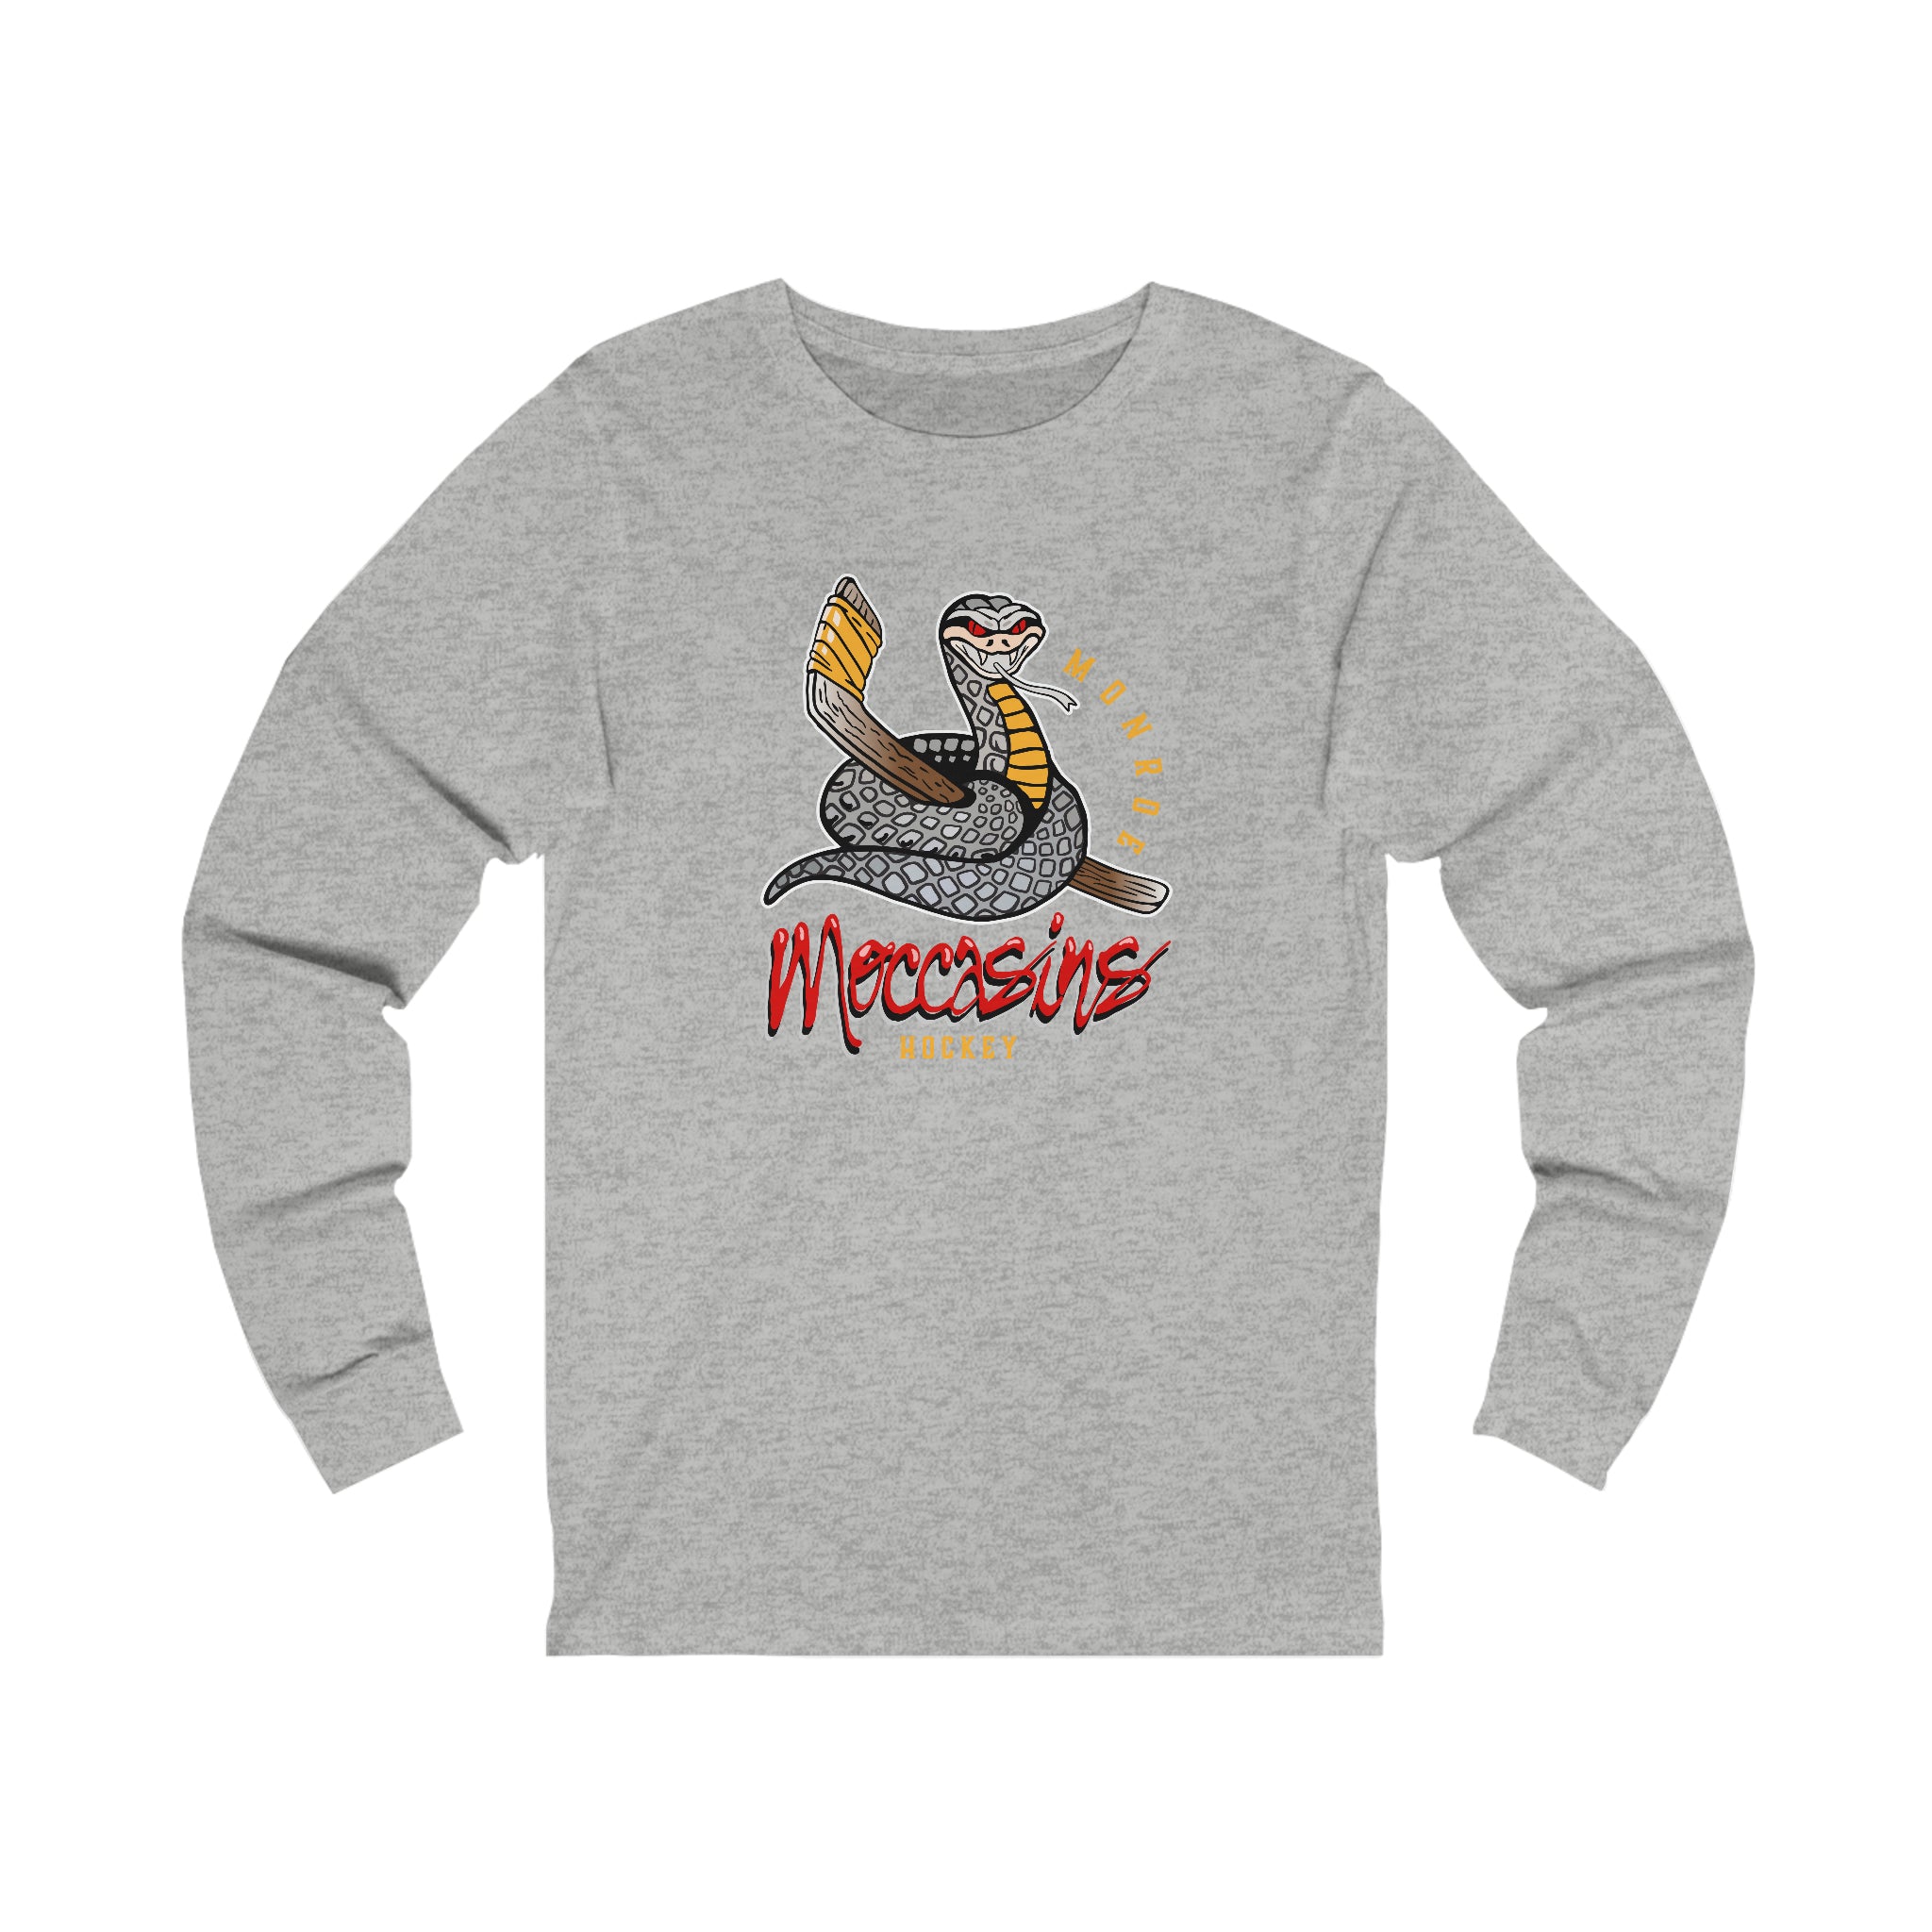 Monroe Moccasins Long Sleeve Shirt